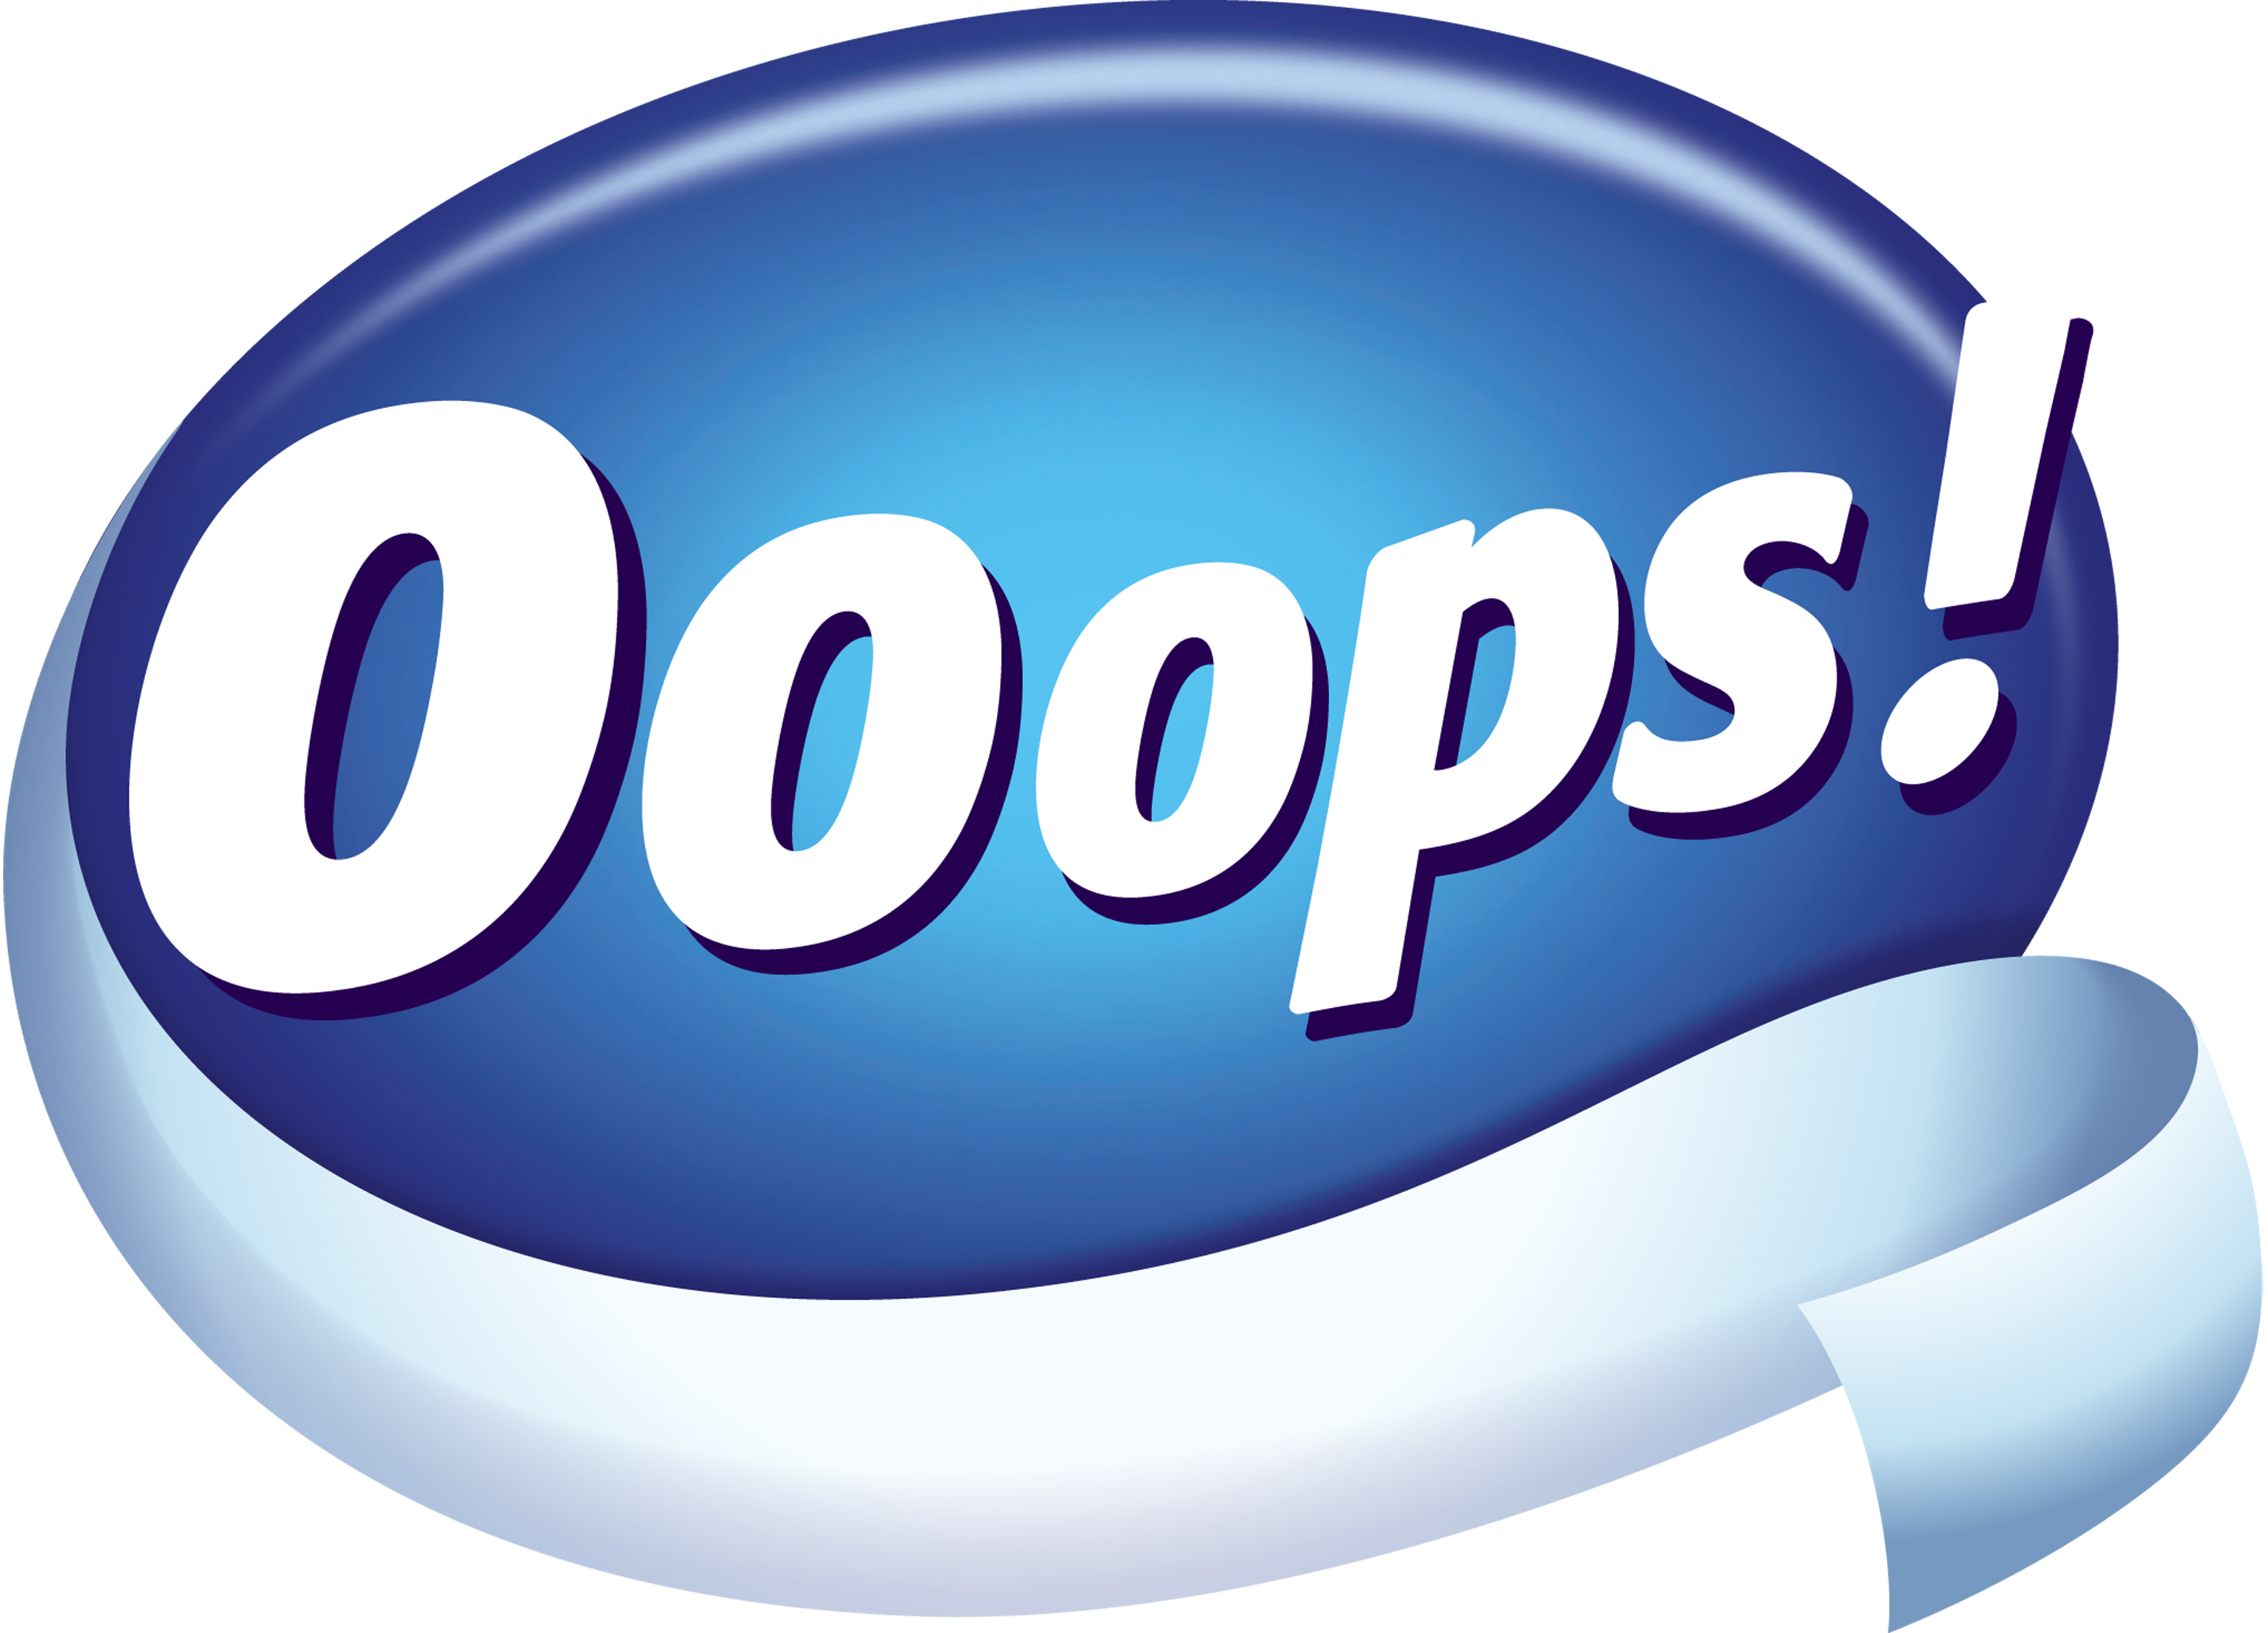 Ooops logo